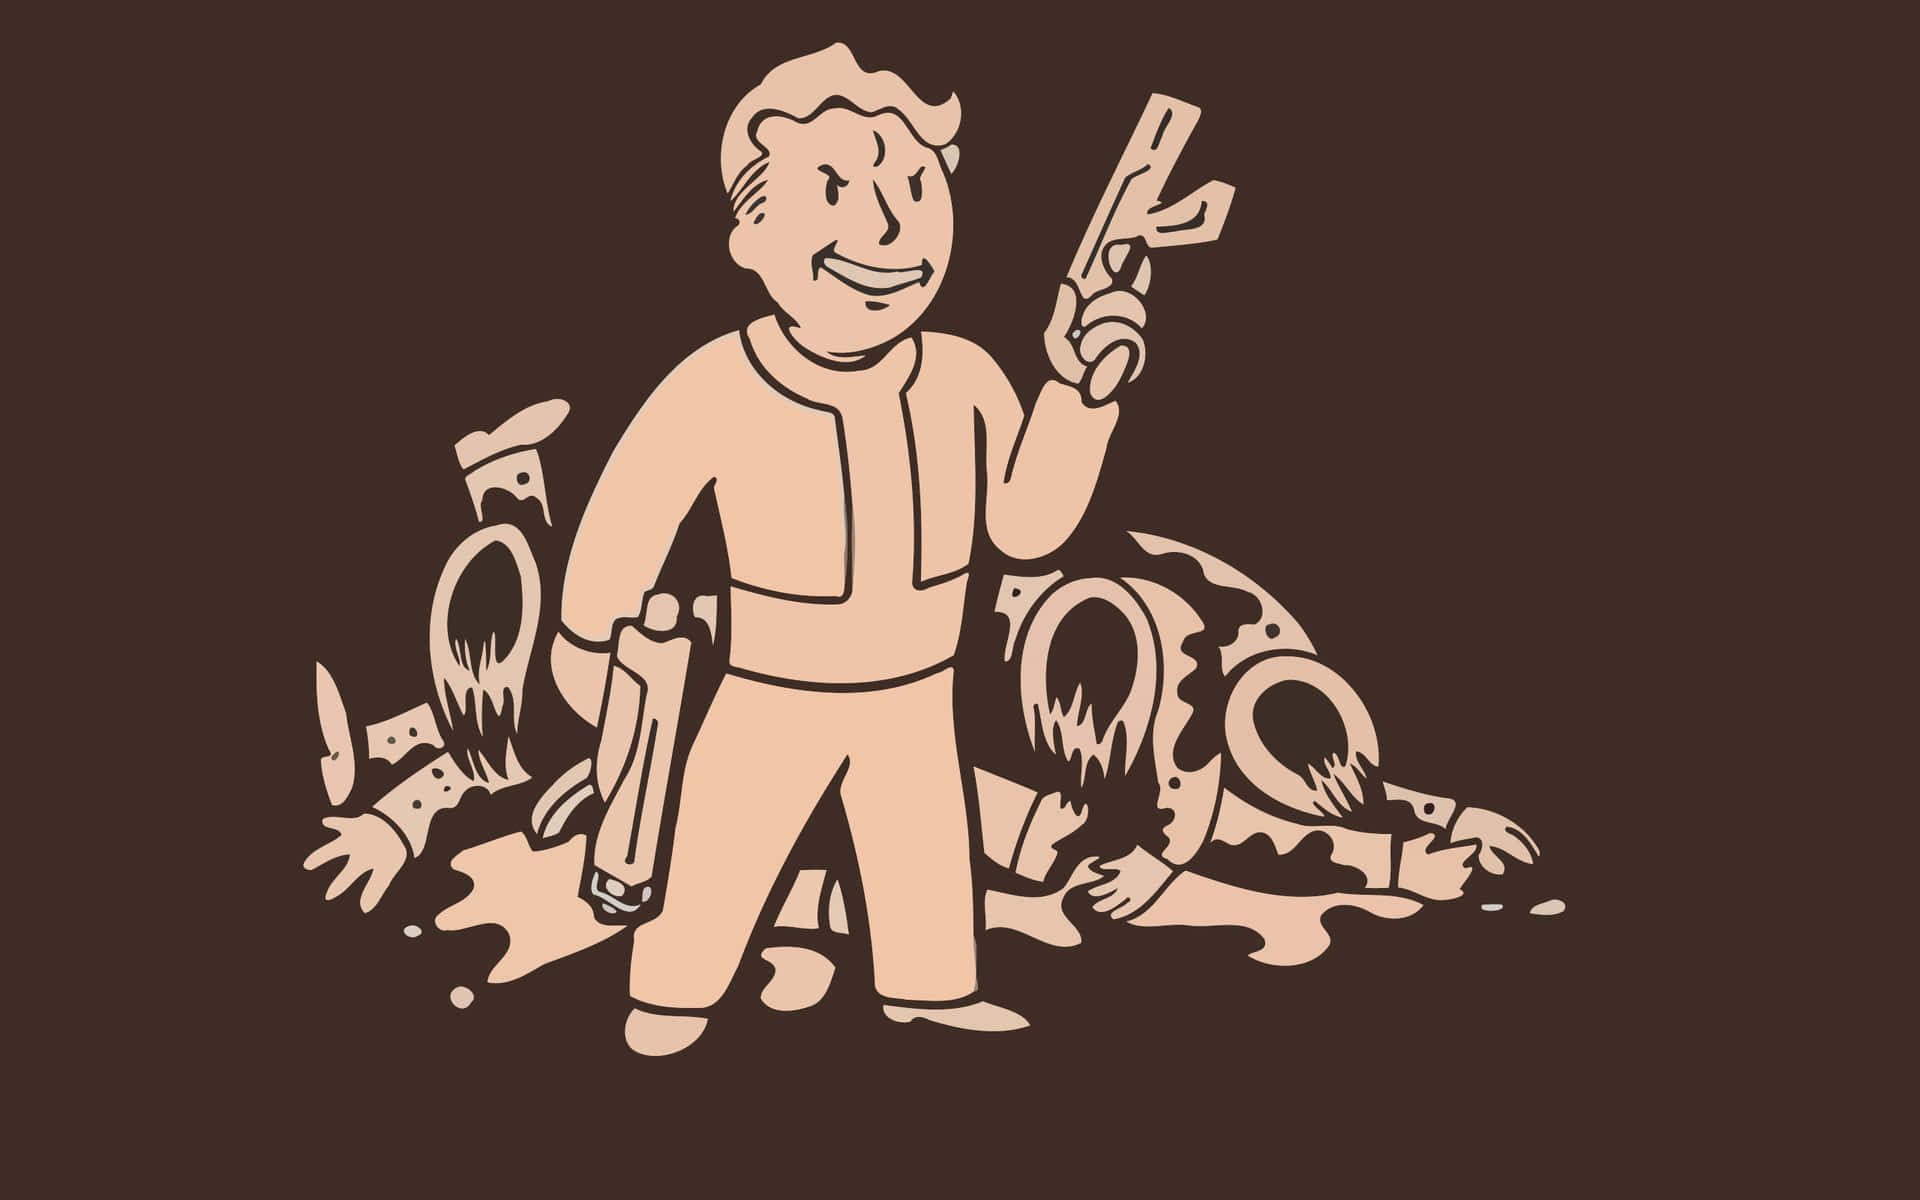 Vault Boy, den officielle maskot af Fallout, bebor denne wallpaper. Wallpaper